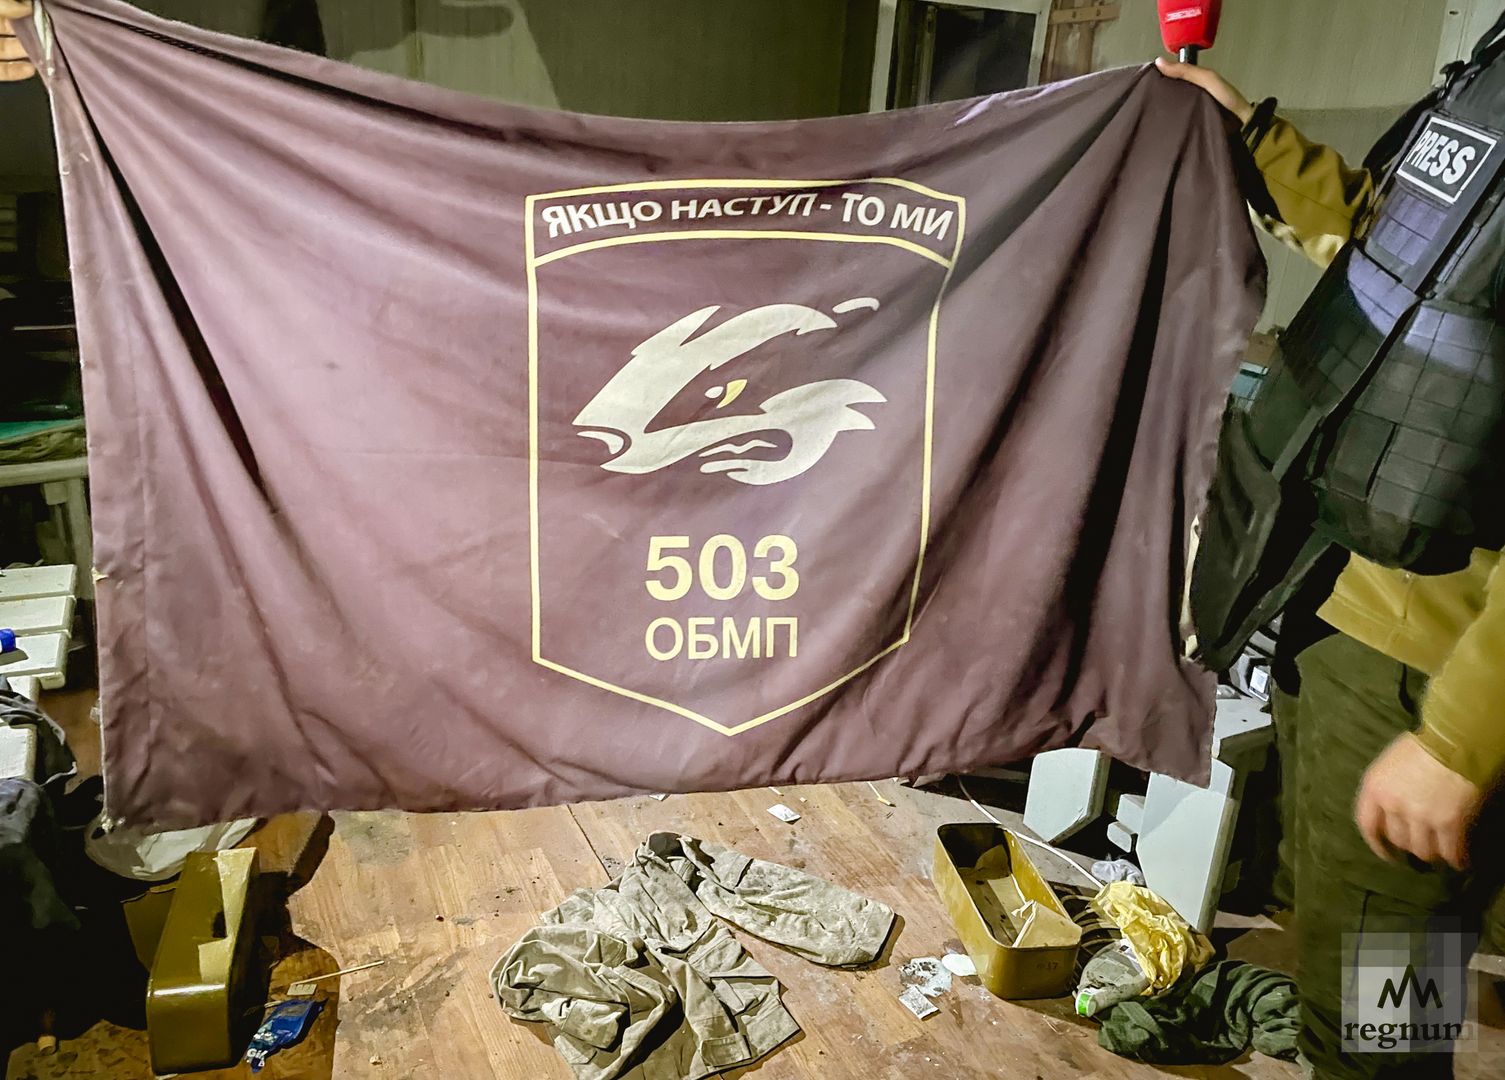 Знамя 503-го отдельного батальона «морьской пiхоты» ВМС Украины, захваченное в Мариуполе